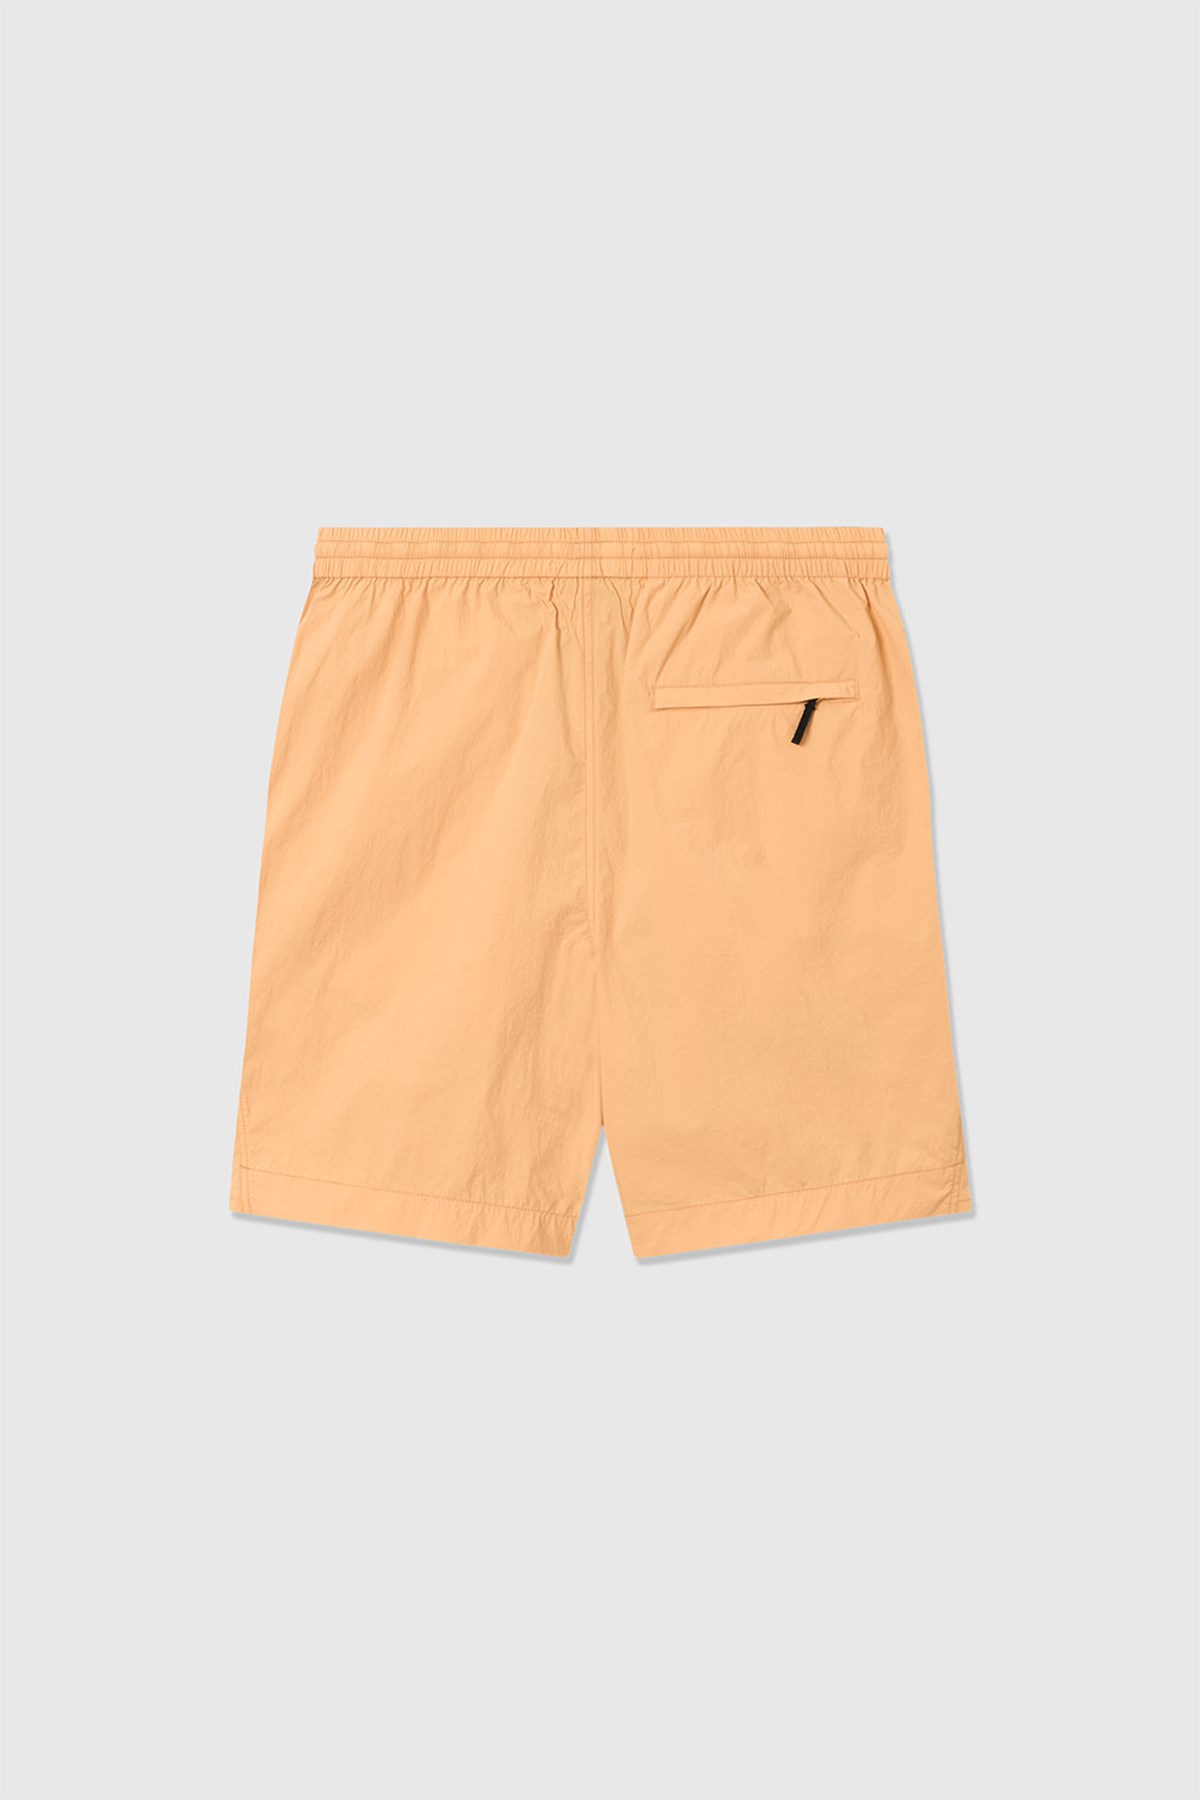 Wood Wood Ollie nylon shorts Abricot orange | WoodWood.com